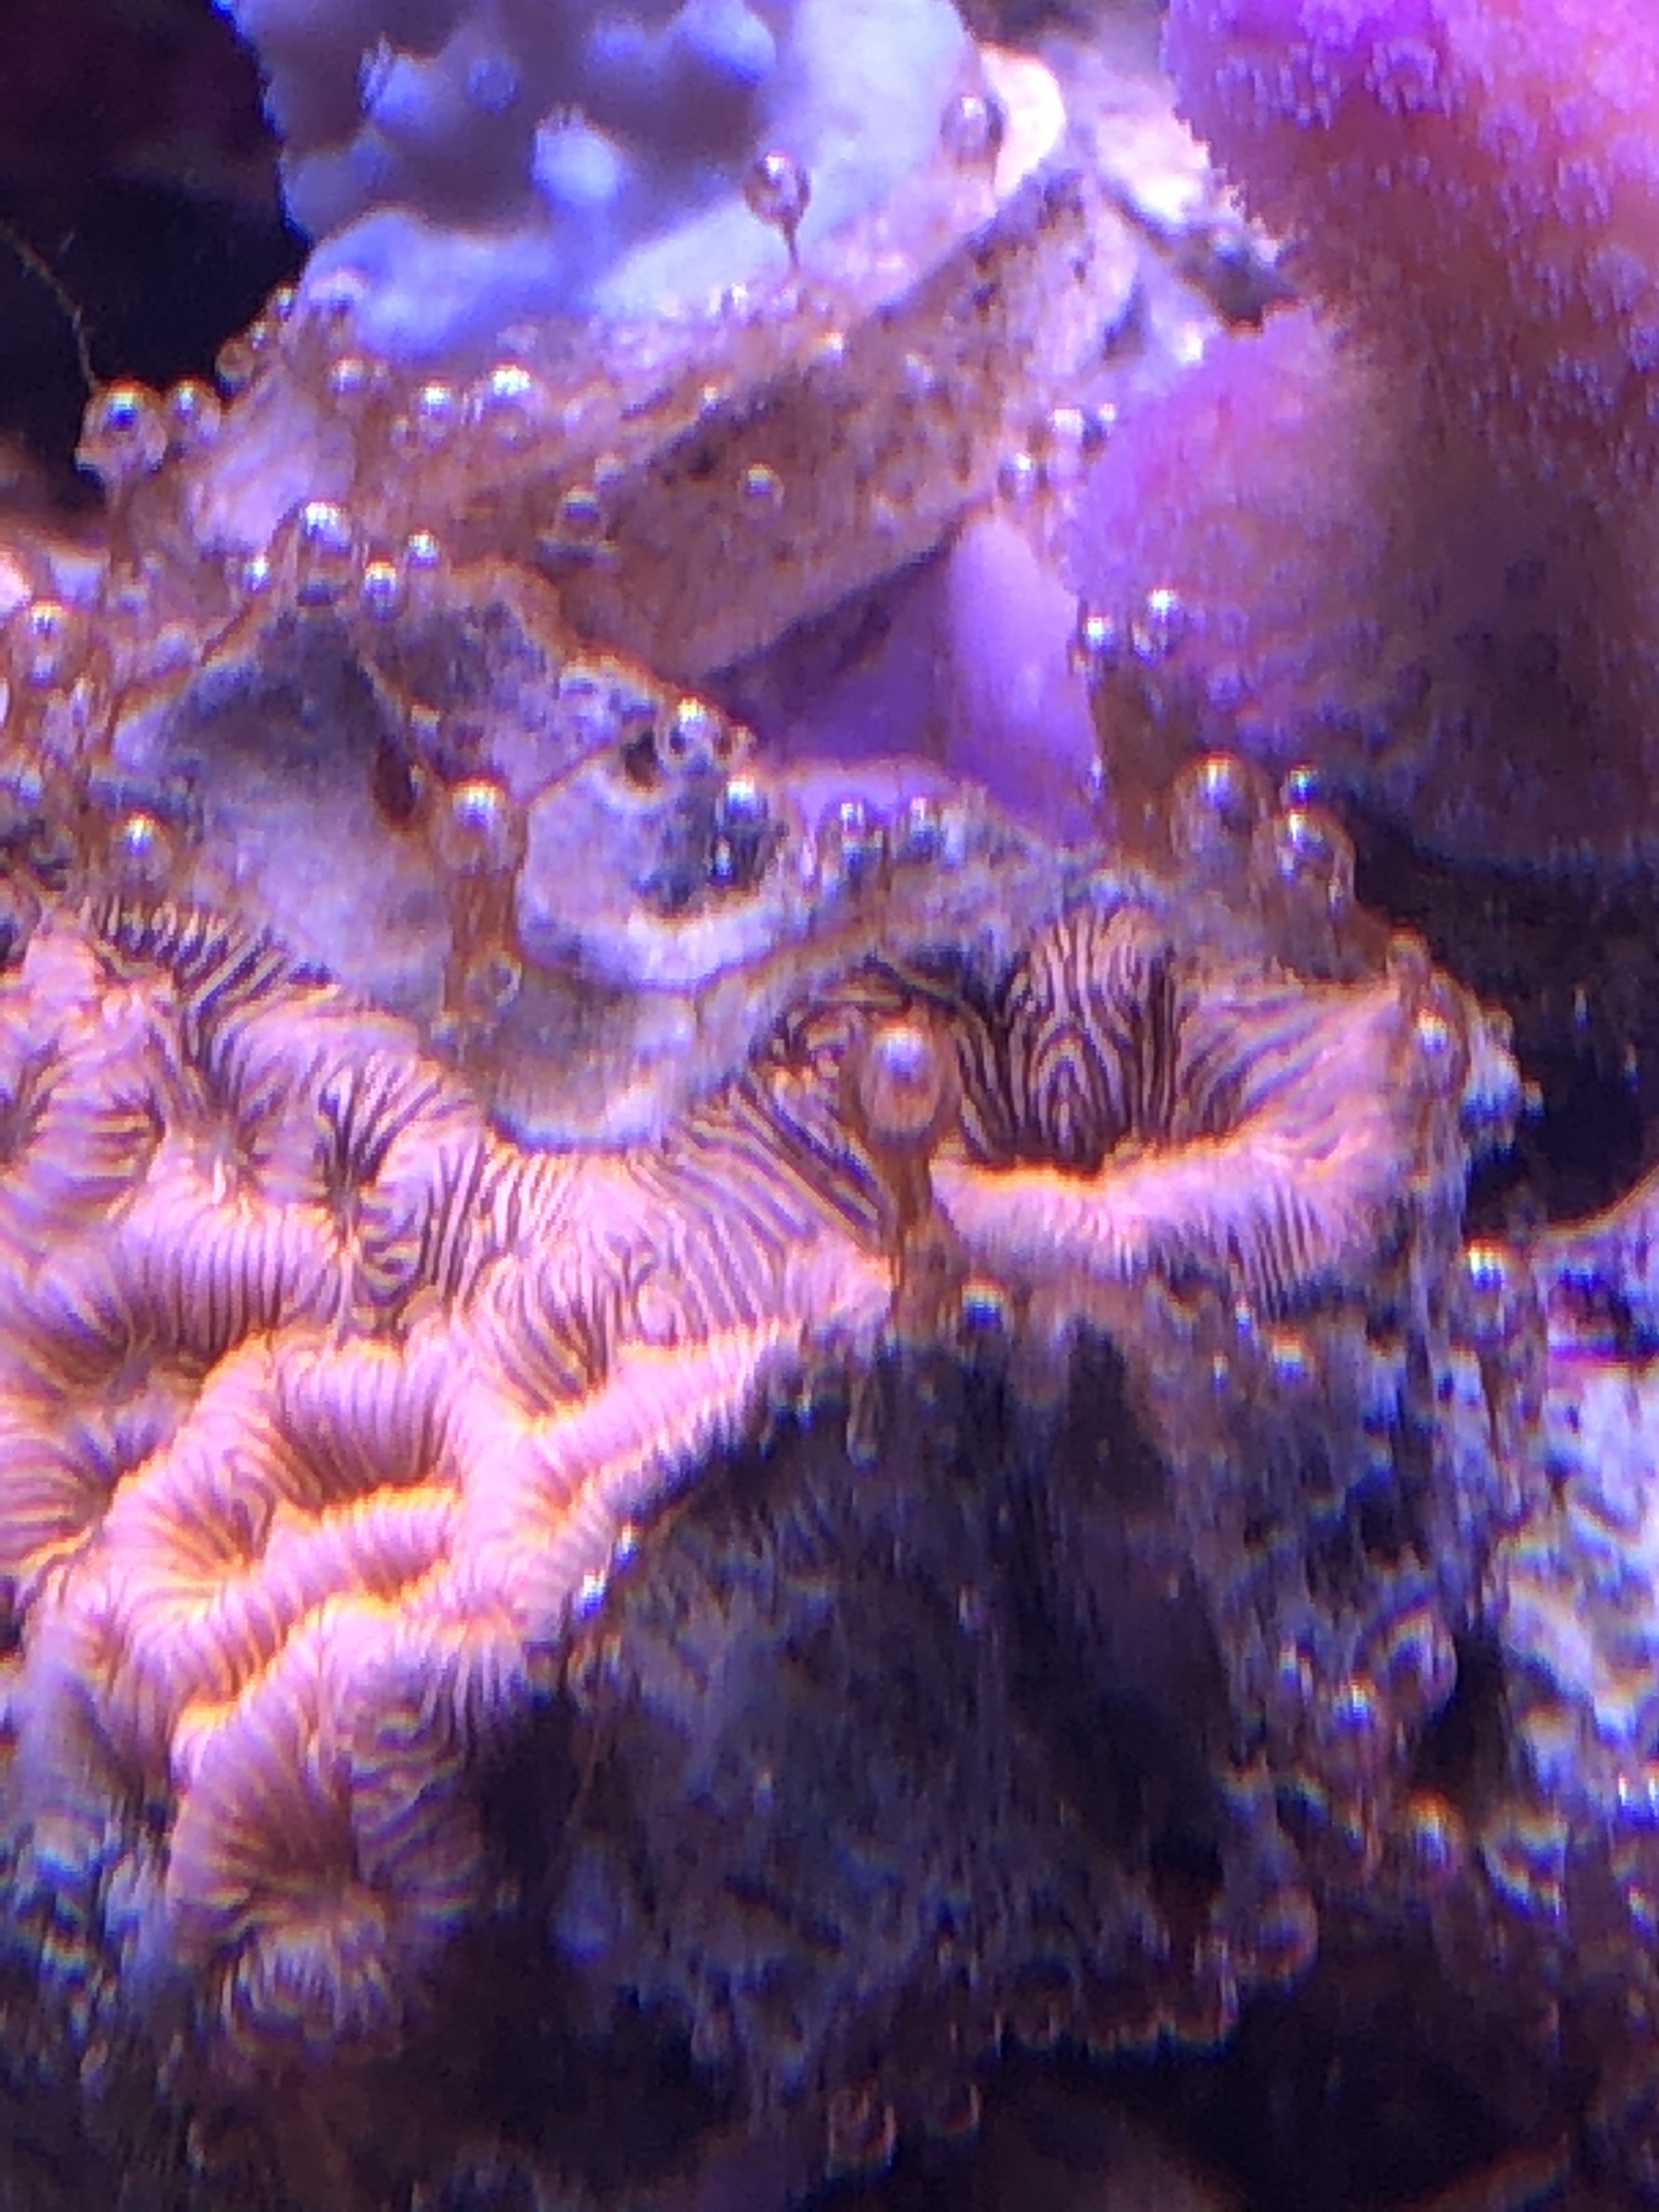 シアノバクテリア 水槽で煌めく珊瑚たち